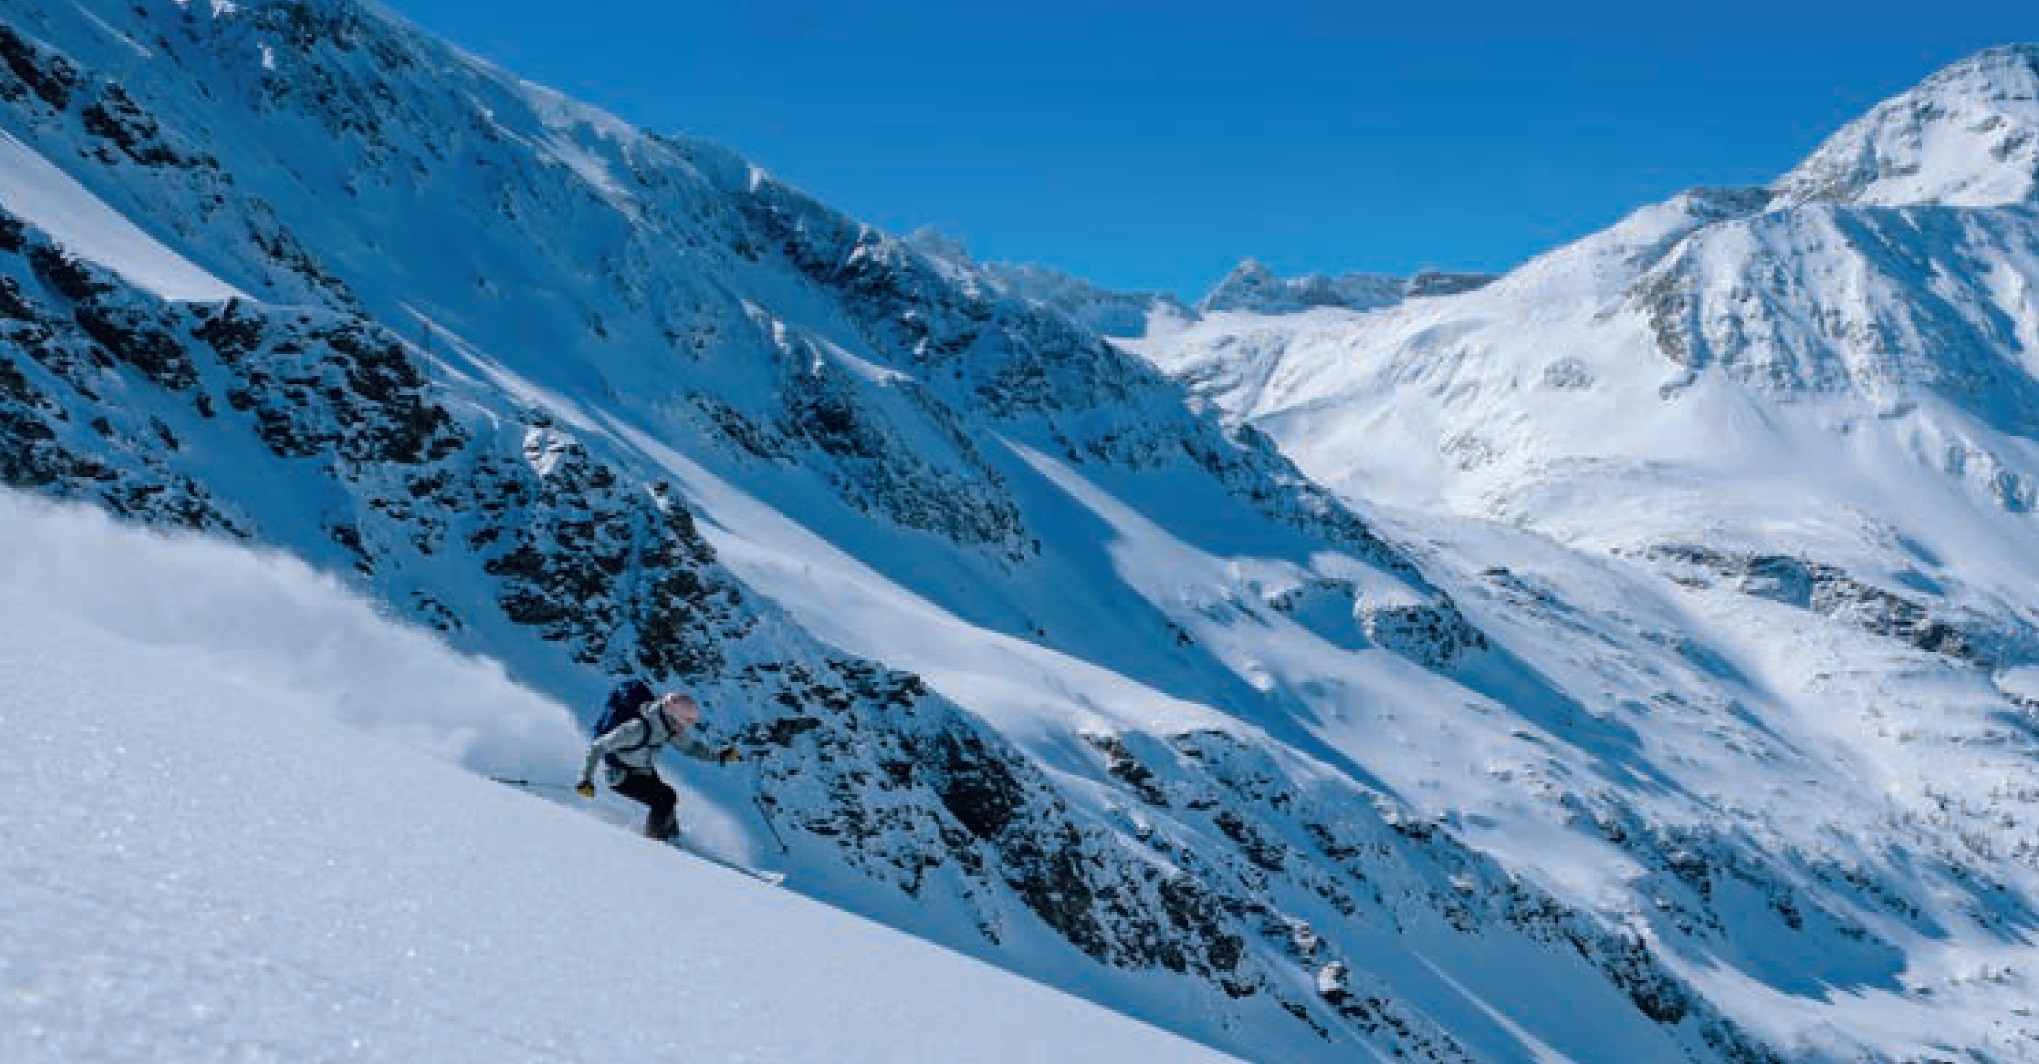 Alpenverein - Skitourenguru